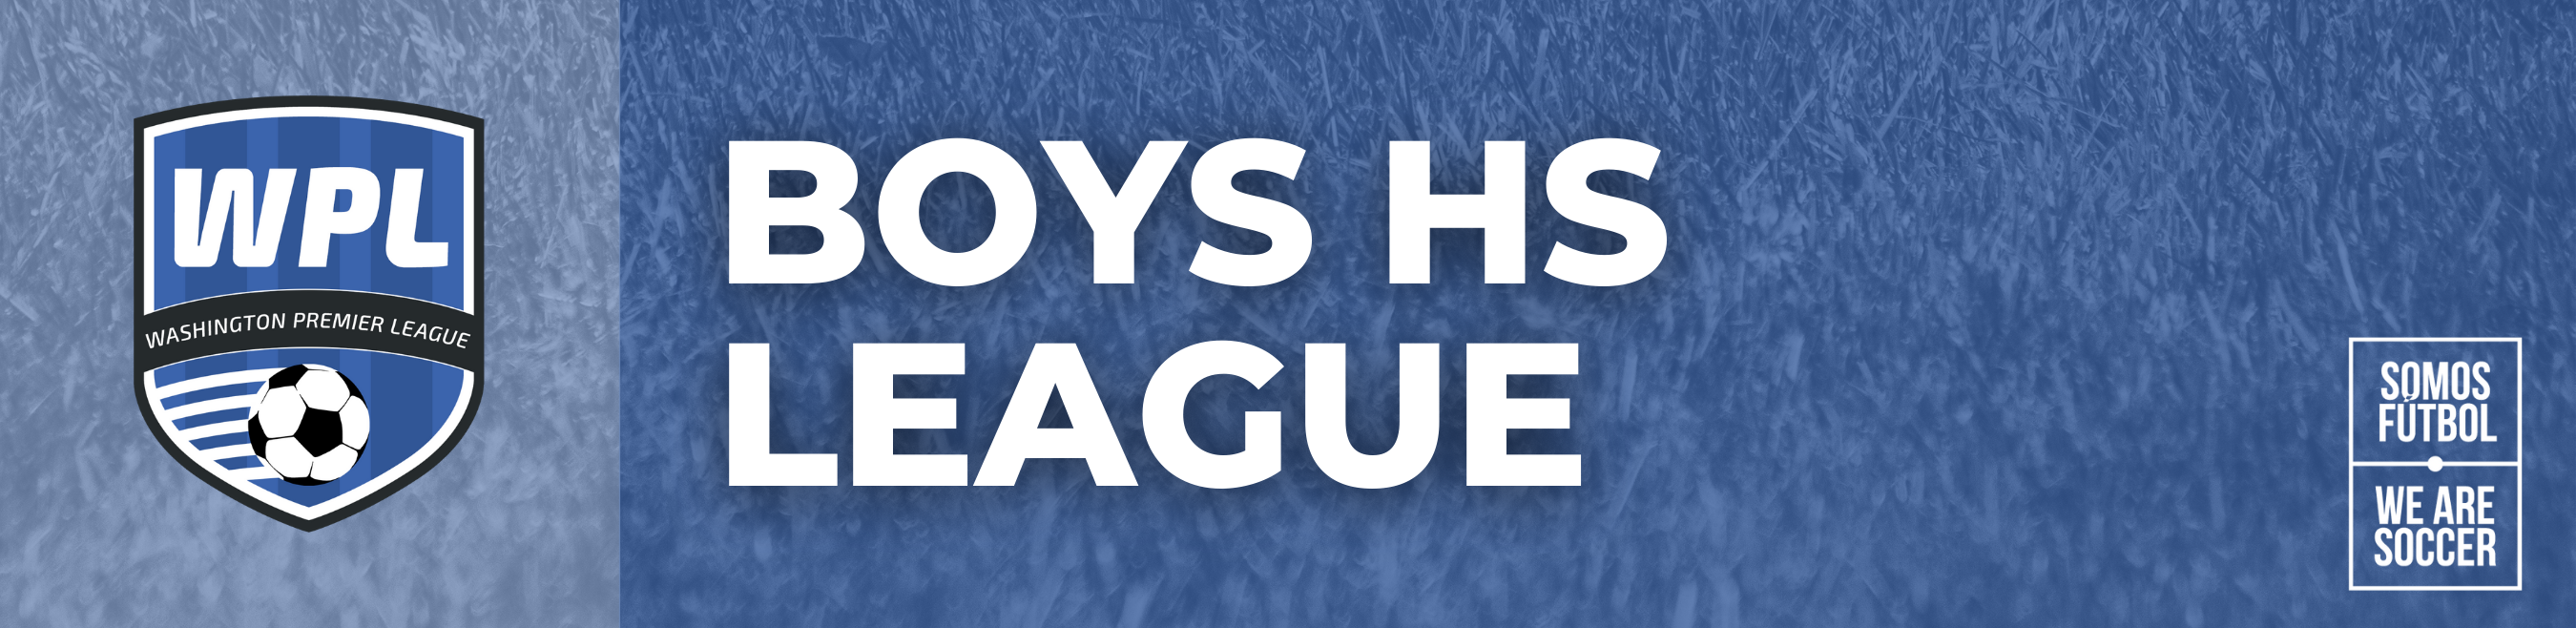 Boys HS League